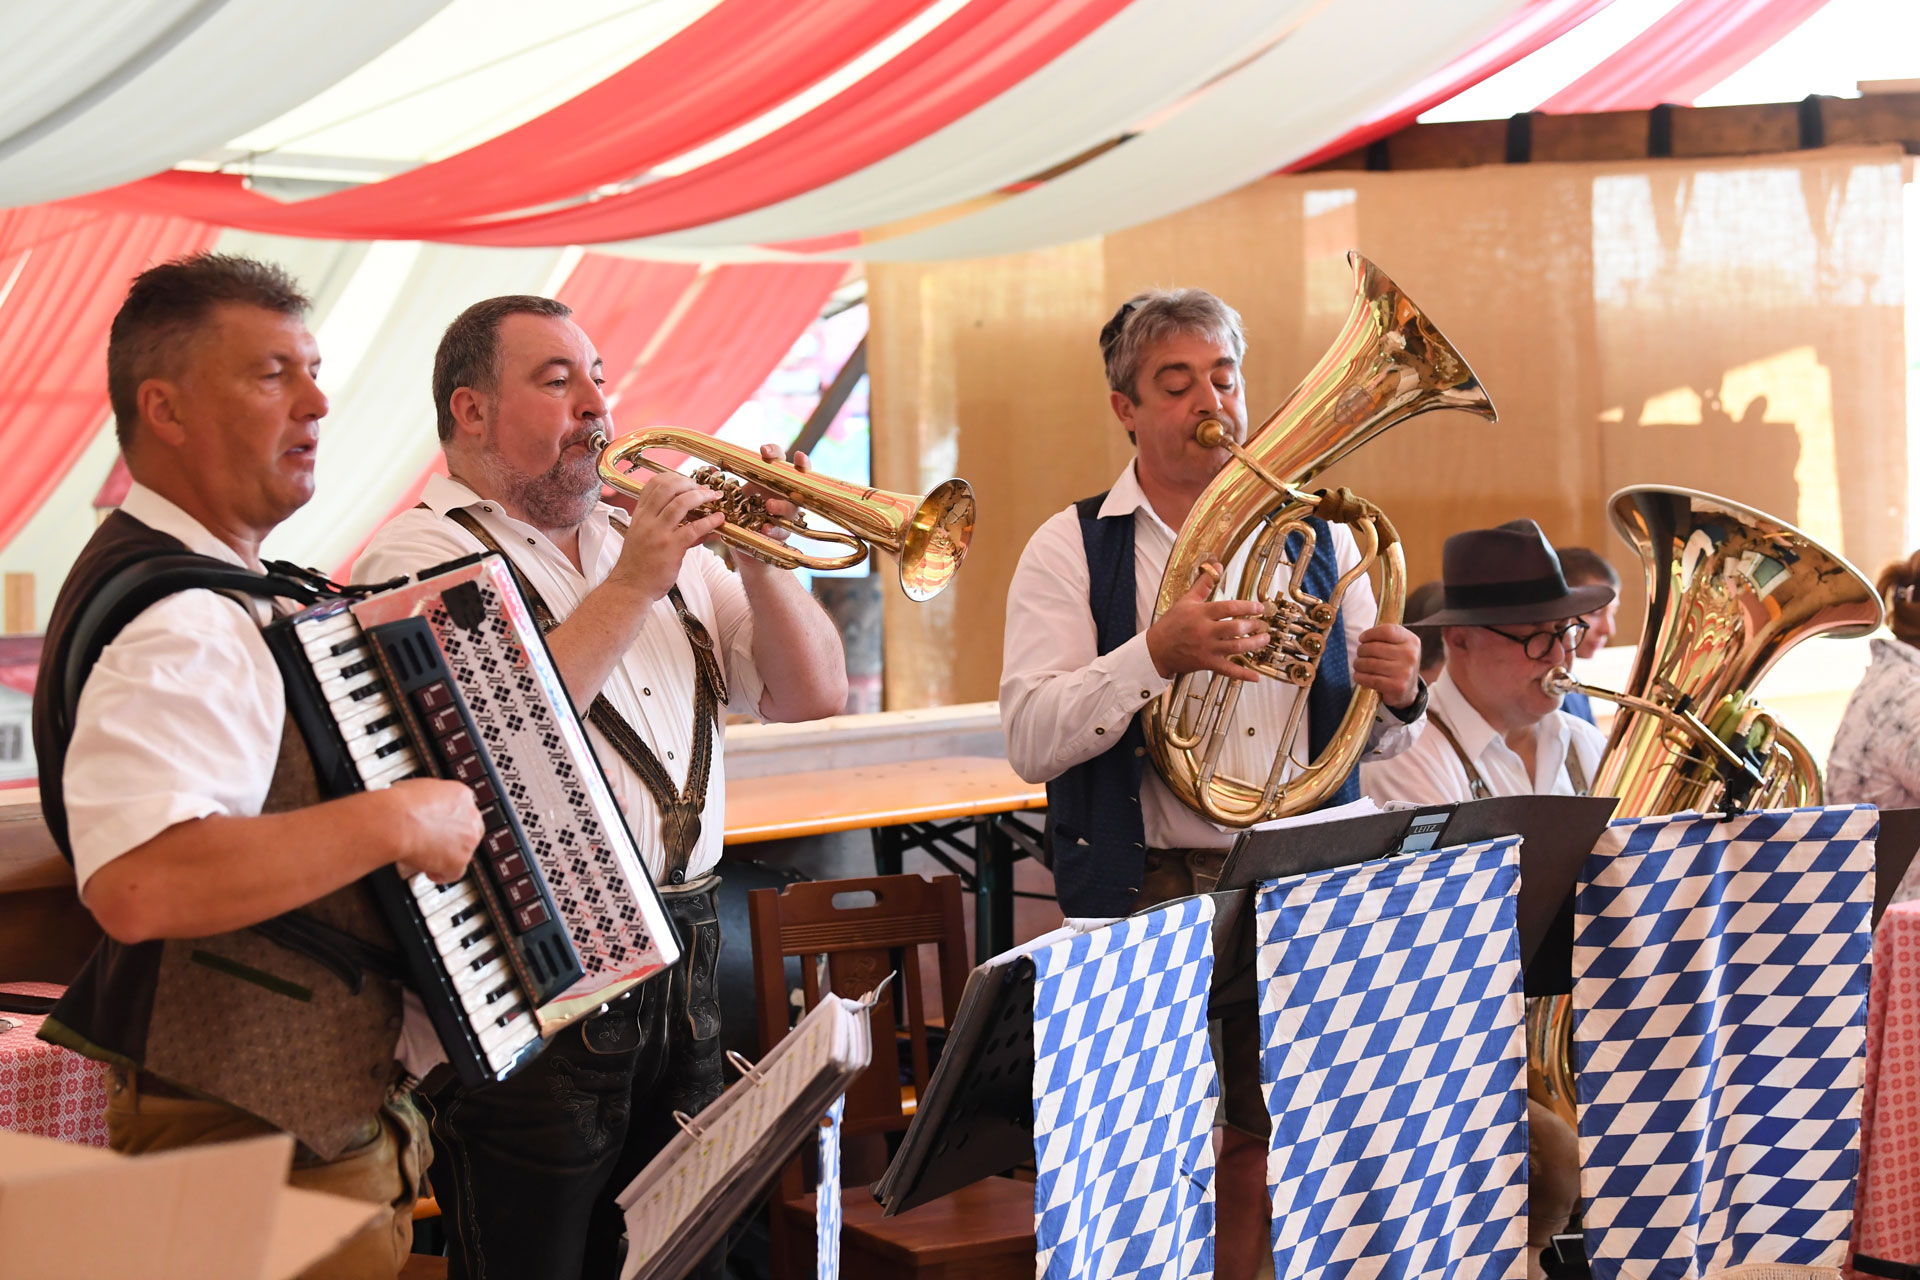 Blasmusikanten im bayerischen Bierzelt